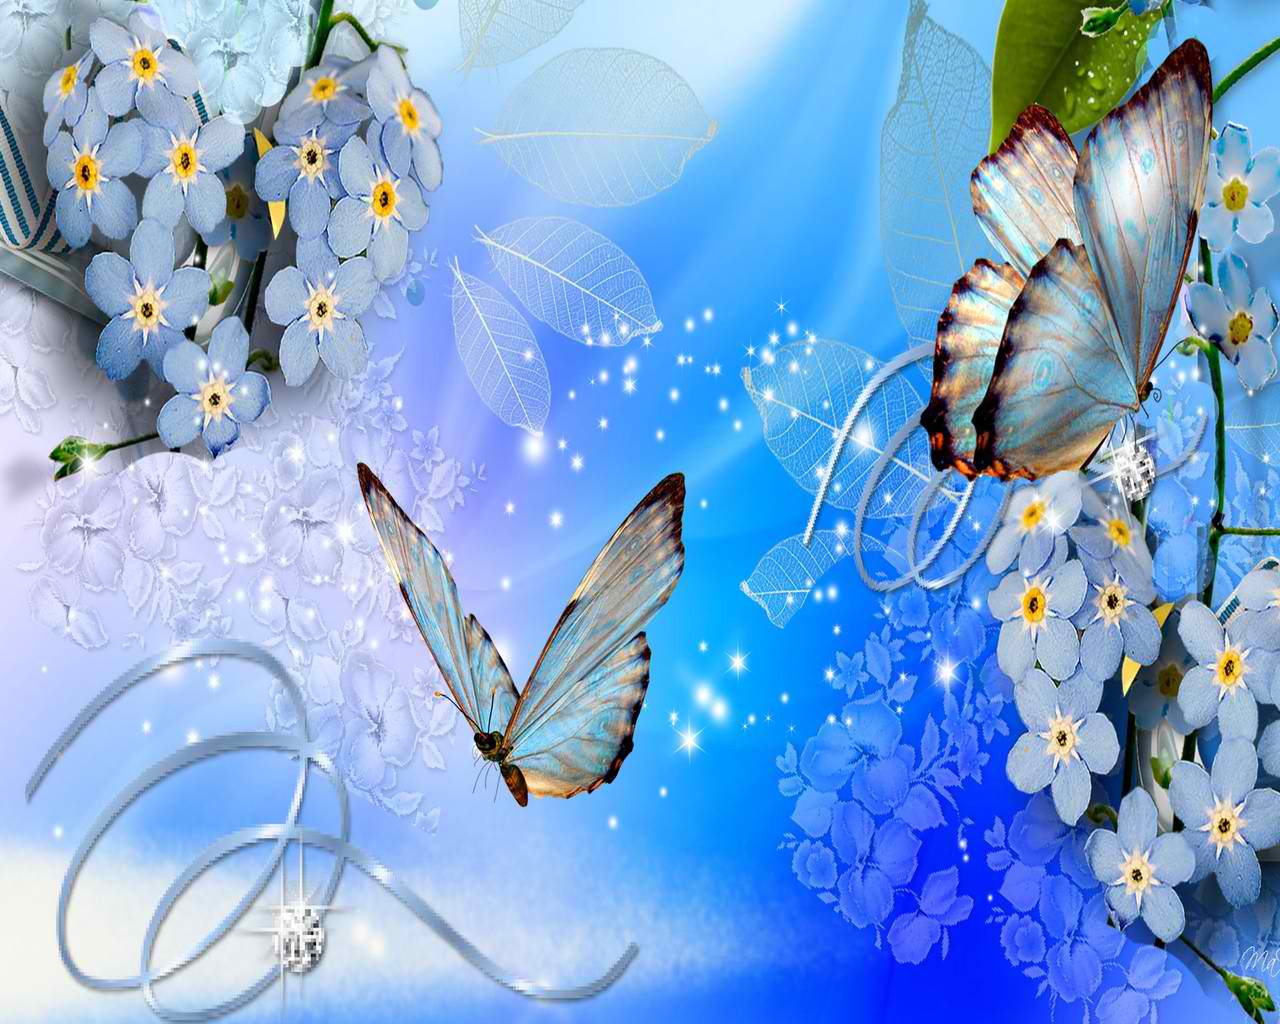 خلفيات الفراشات الملونة , اجمل صور الفراشات المتنوعة , 2021 Butterflies